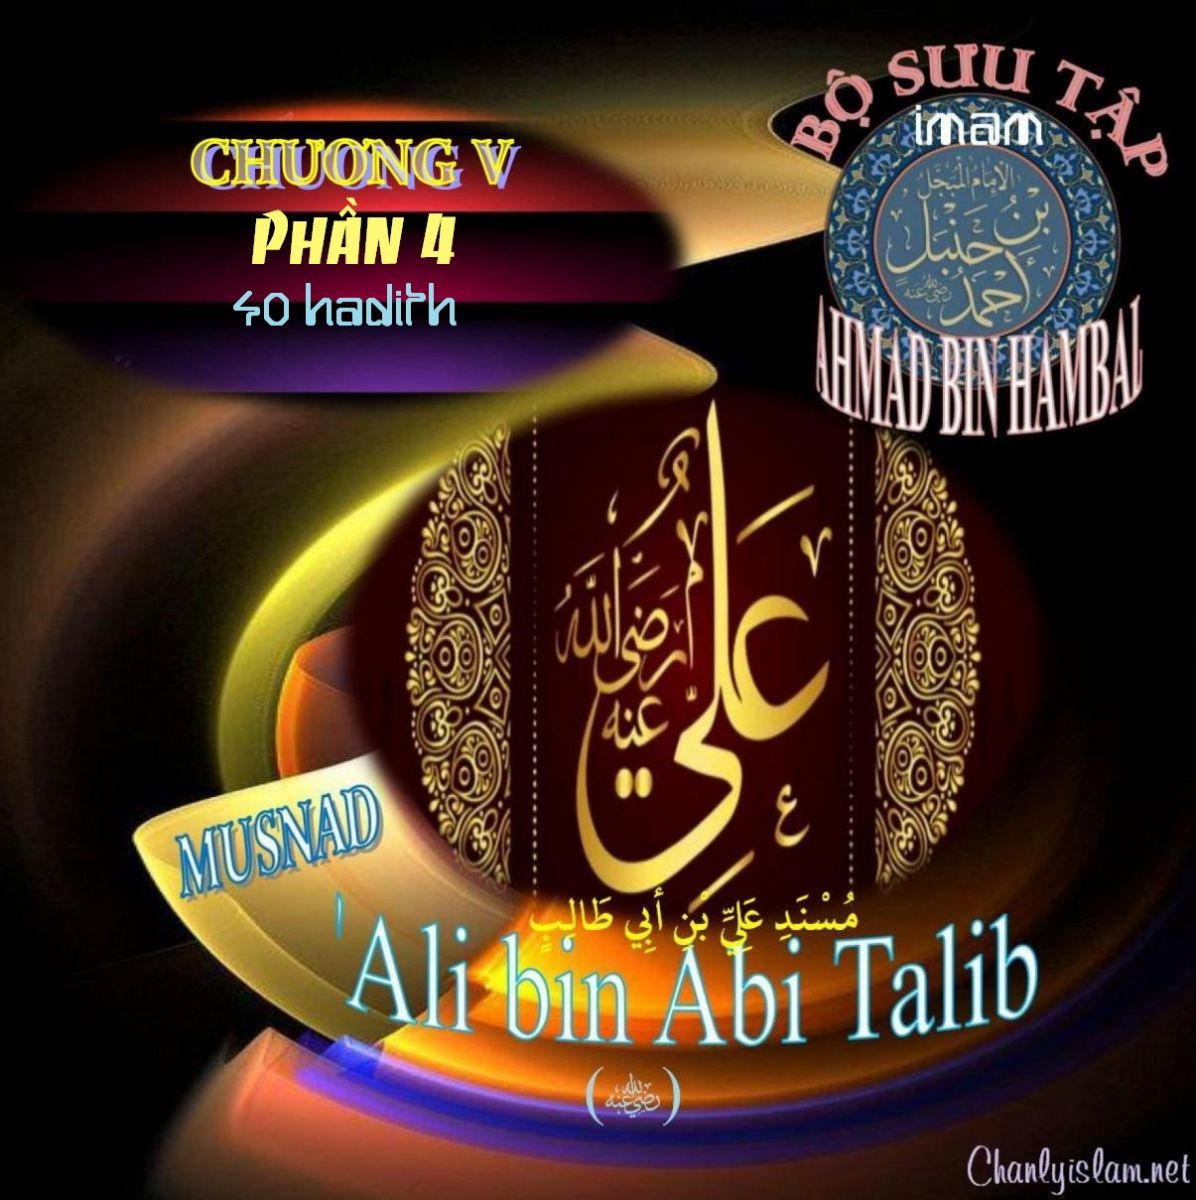 BỘ SƯU TẬP MUSNAD IMAM AHMAD IBN HANBAL - CHƯƠNG V - MUSNAD ALI BIN ABI TALIB - PHẦN 4